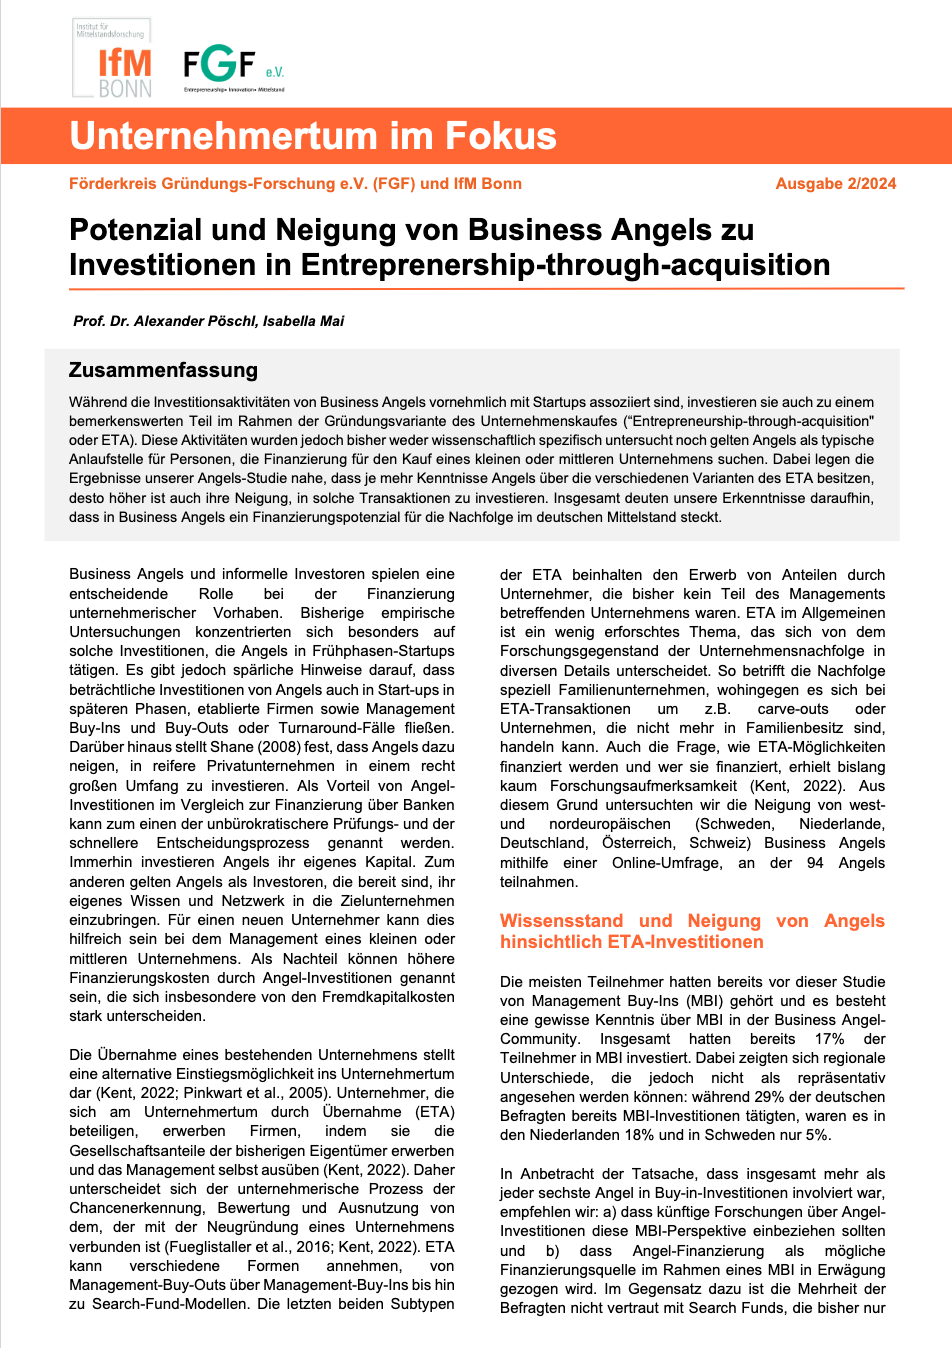 Titel IfM Bonn Business Angels als Finanzierungsoption für Unternehmensnachfolgen